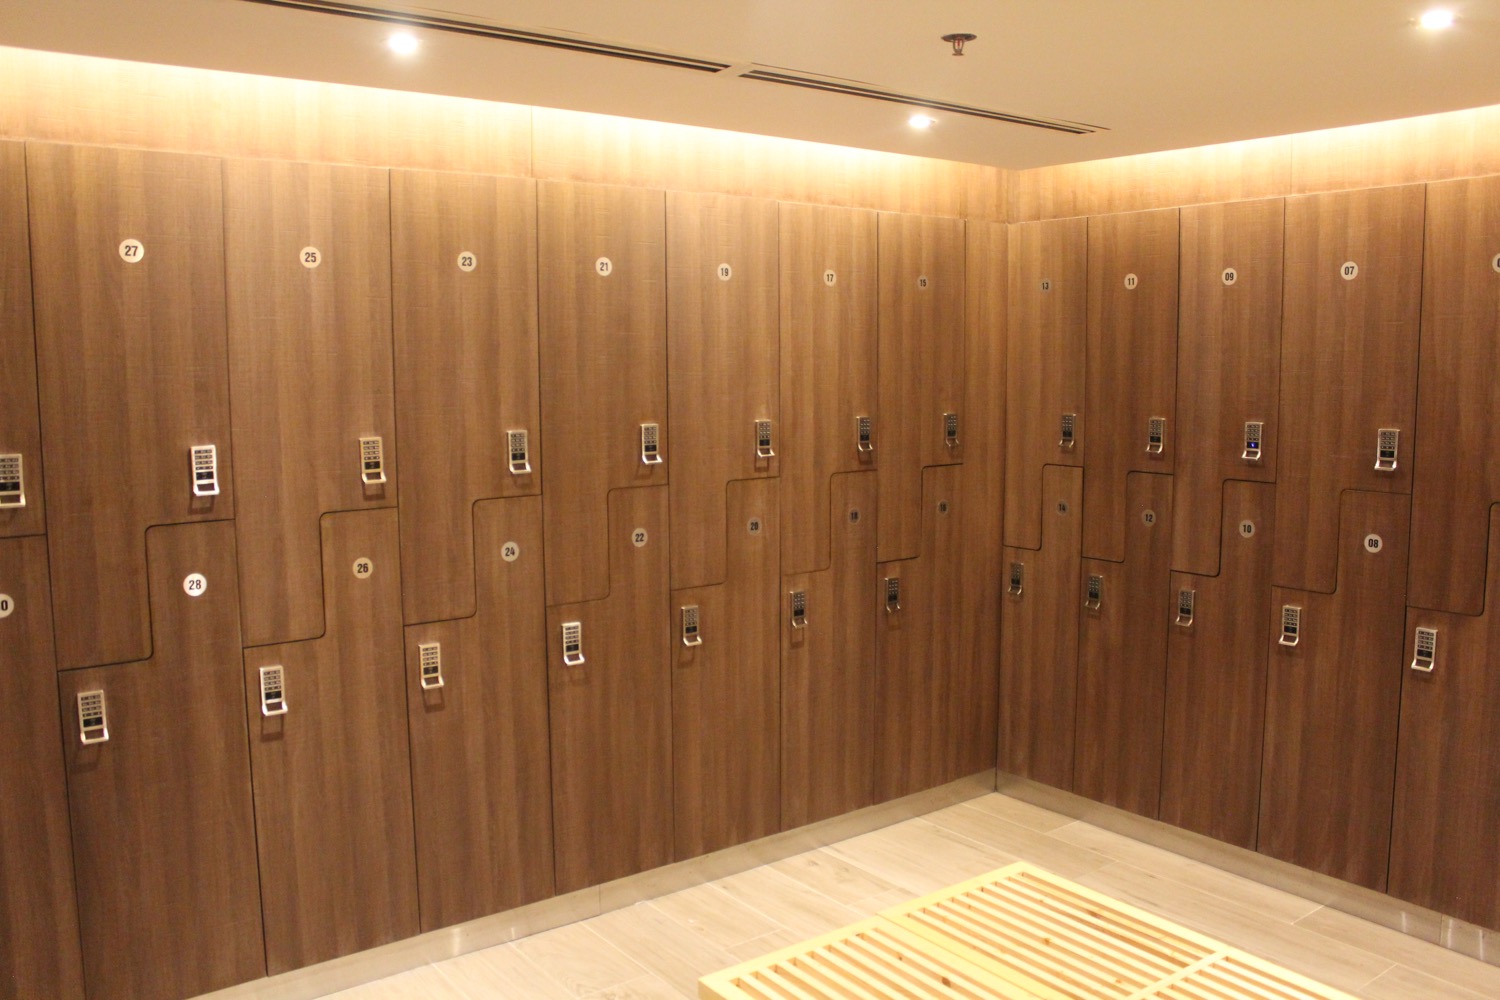 a locker room with many lockers